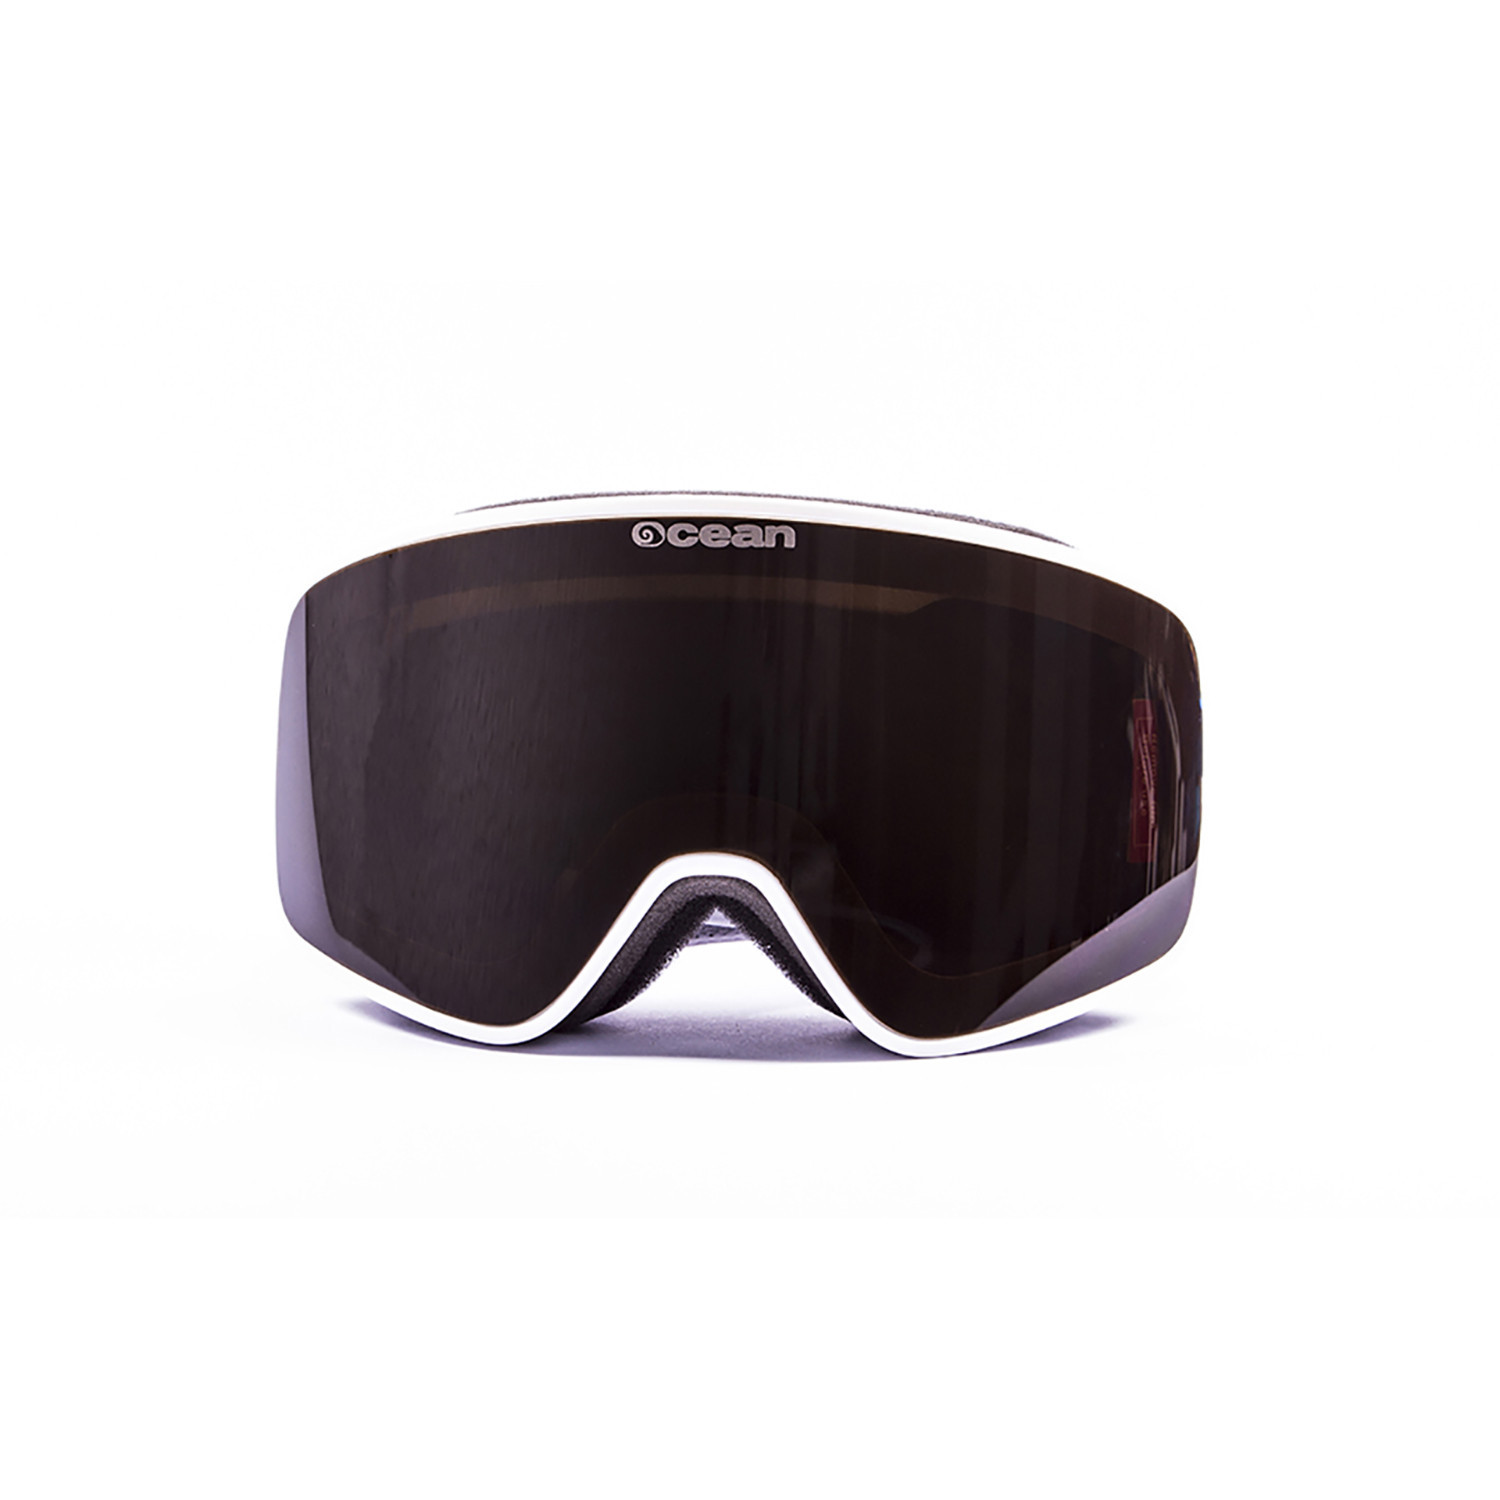 Masque Aspen par Ocean Sunglasses (Plusieurs coloris)